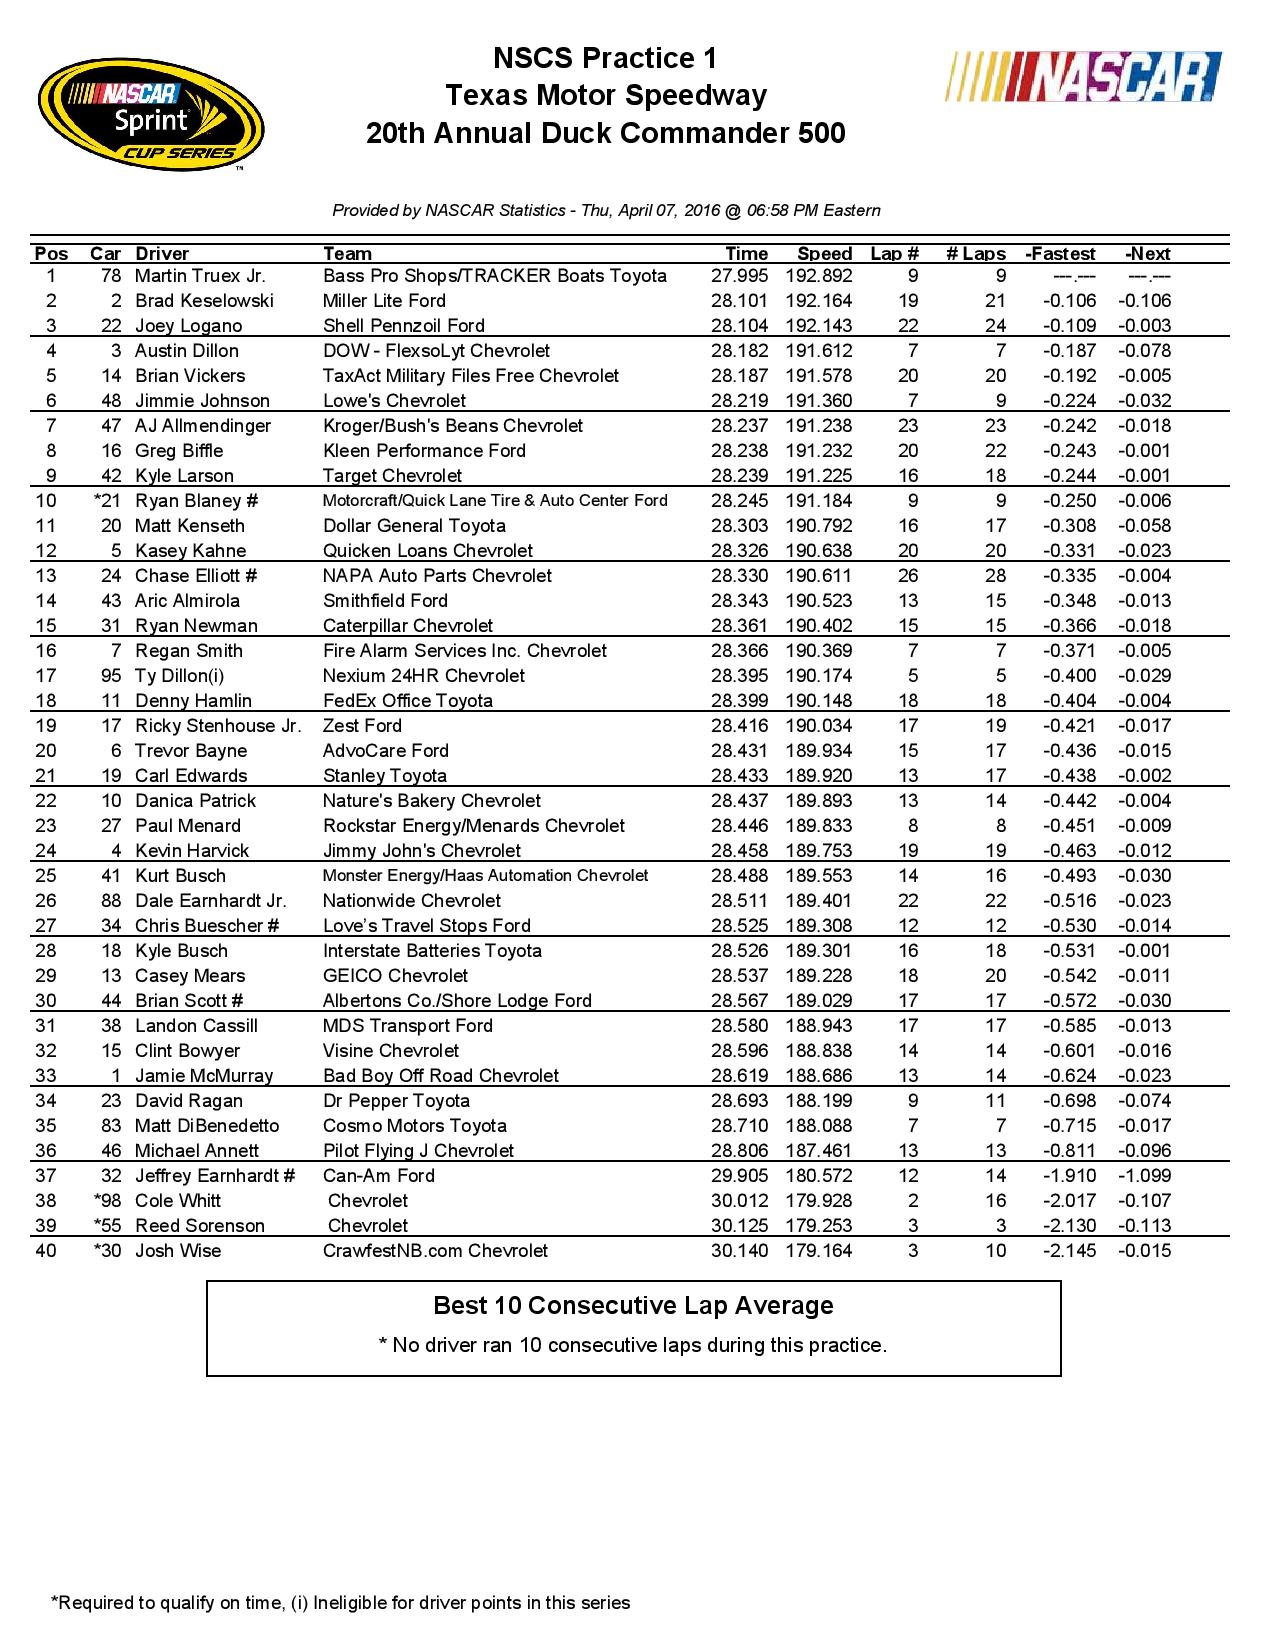 Texas Motor Speedway NSCS 1st-Practice Results 04-07-16